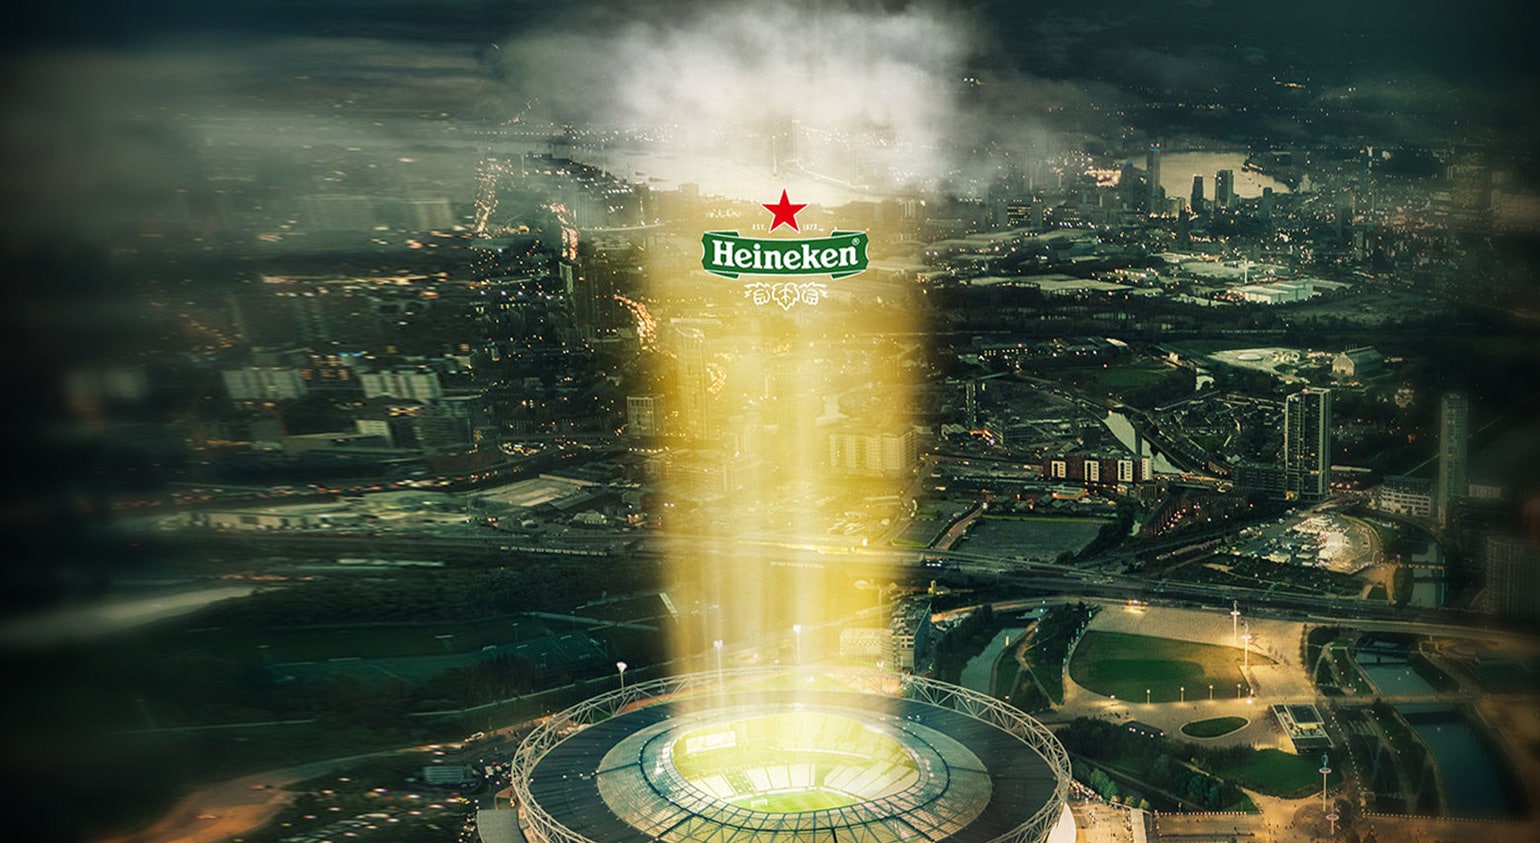 Heineken glass overlaid on cityscape at twilight